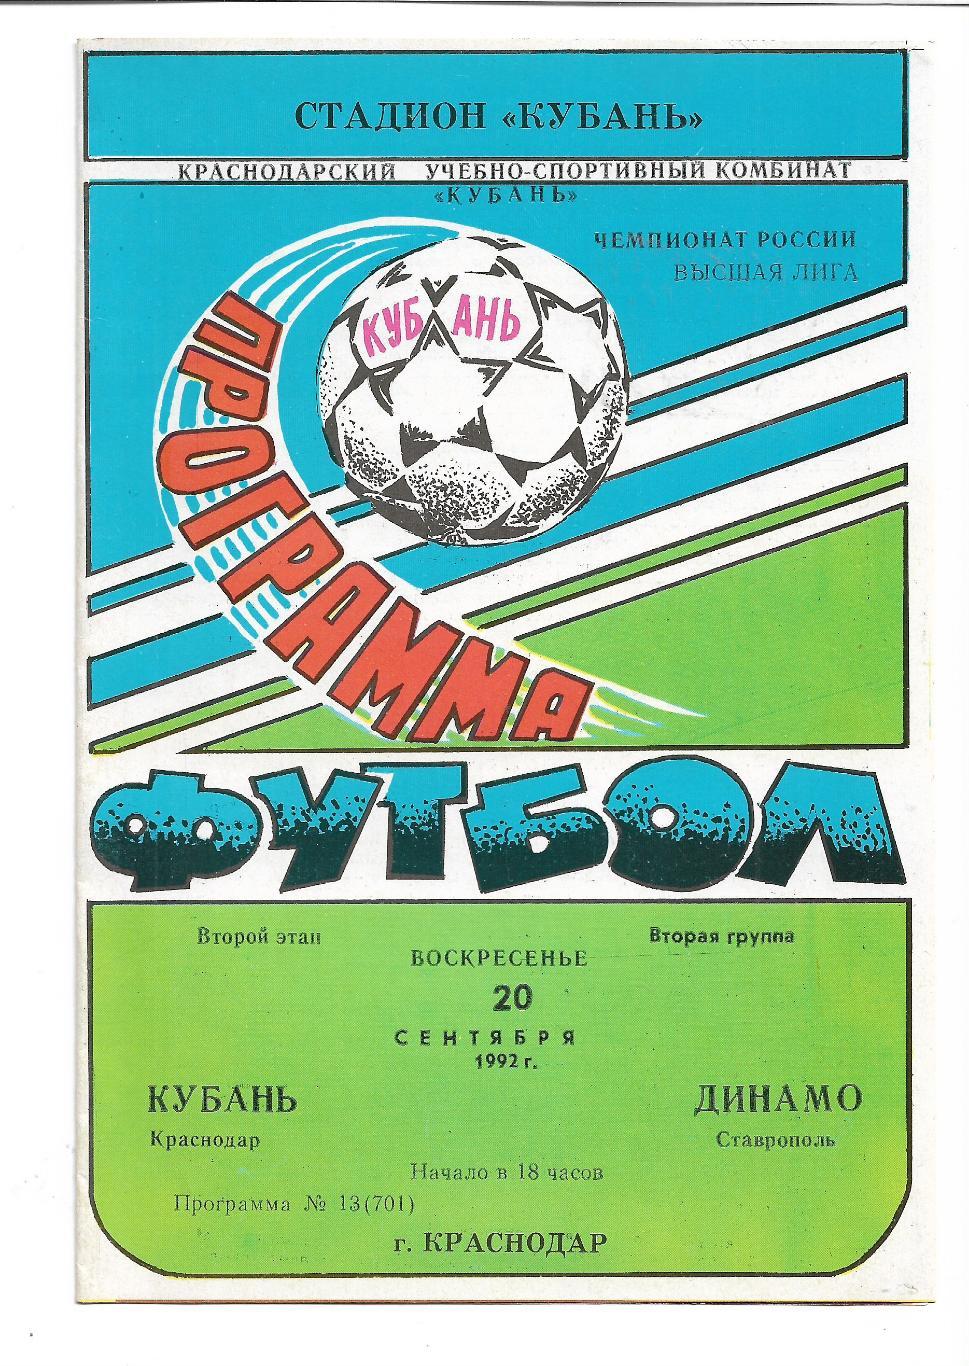 Кубань Краснодар Динамо Ставрополь 20 сентября 1992 года